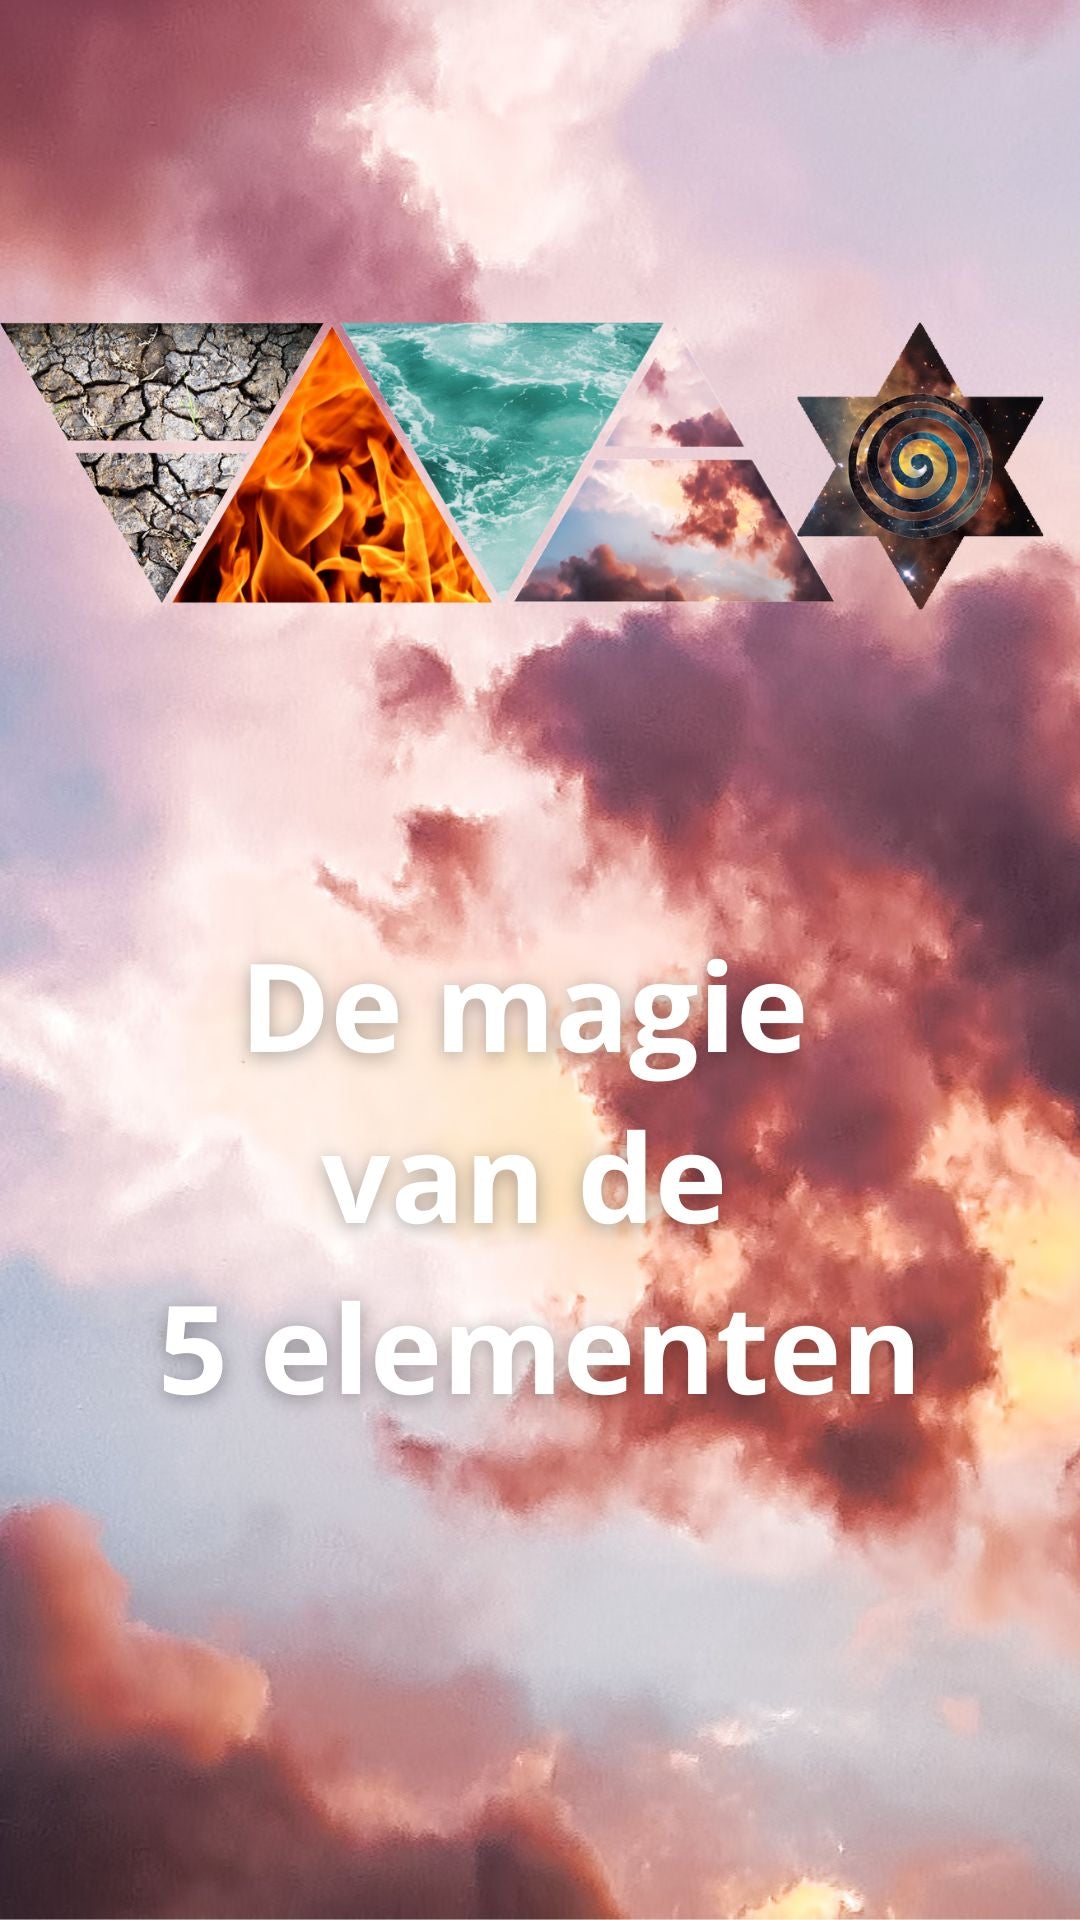 E-book "De Magie van de Elementen" Download